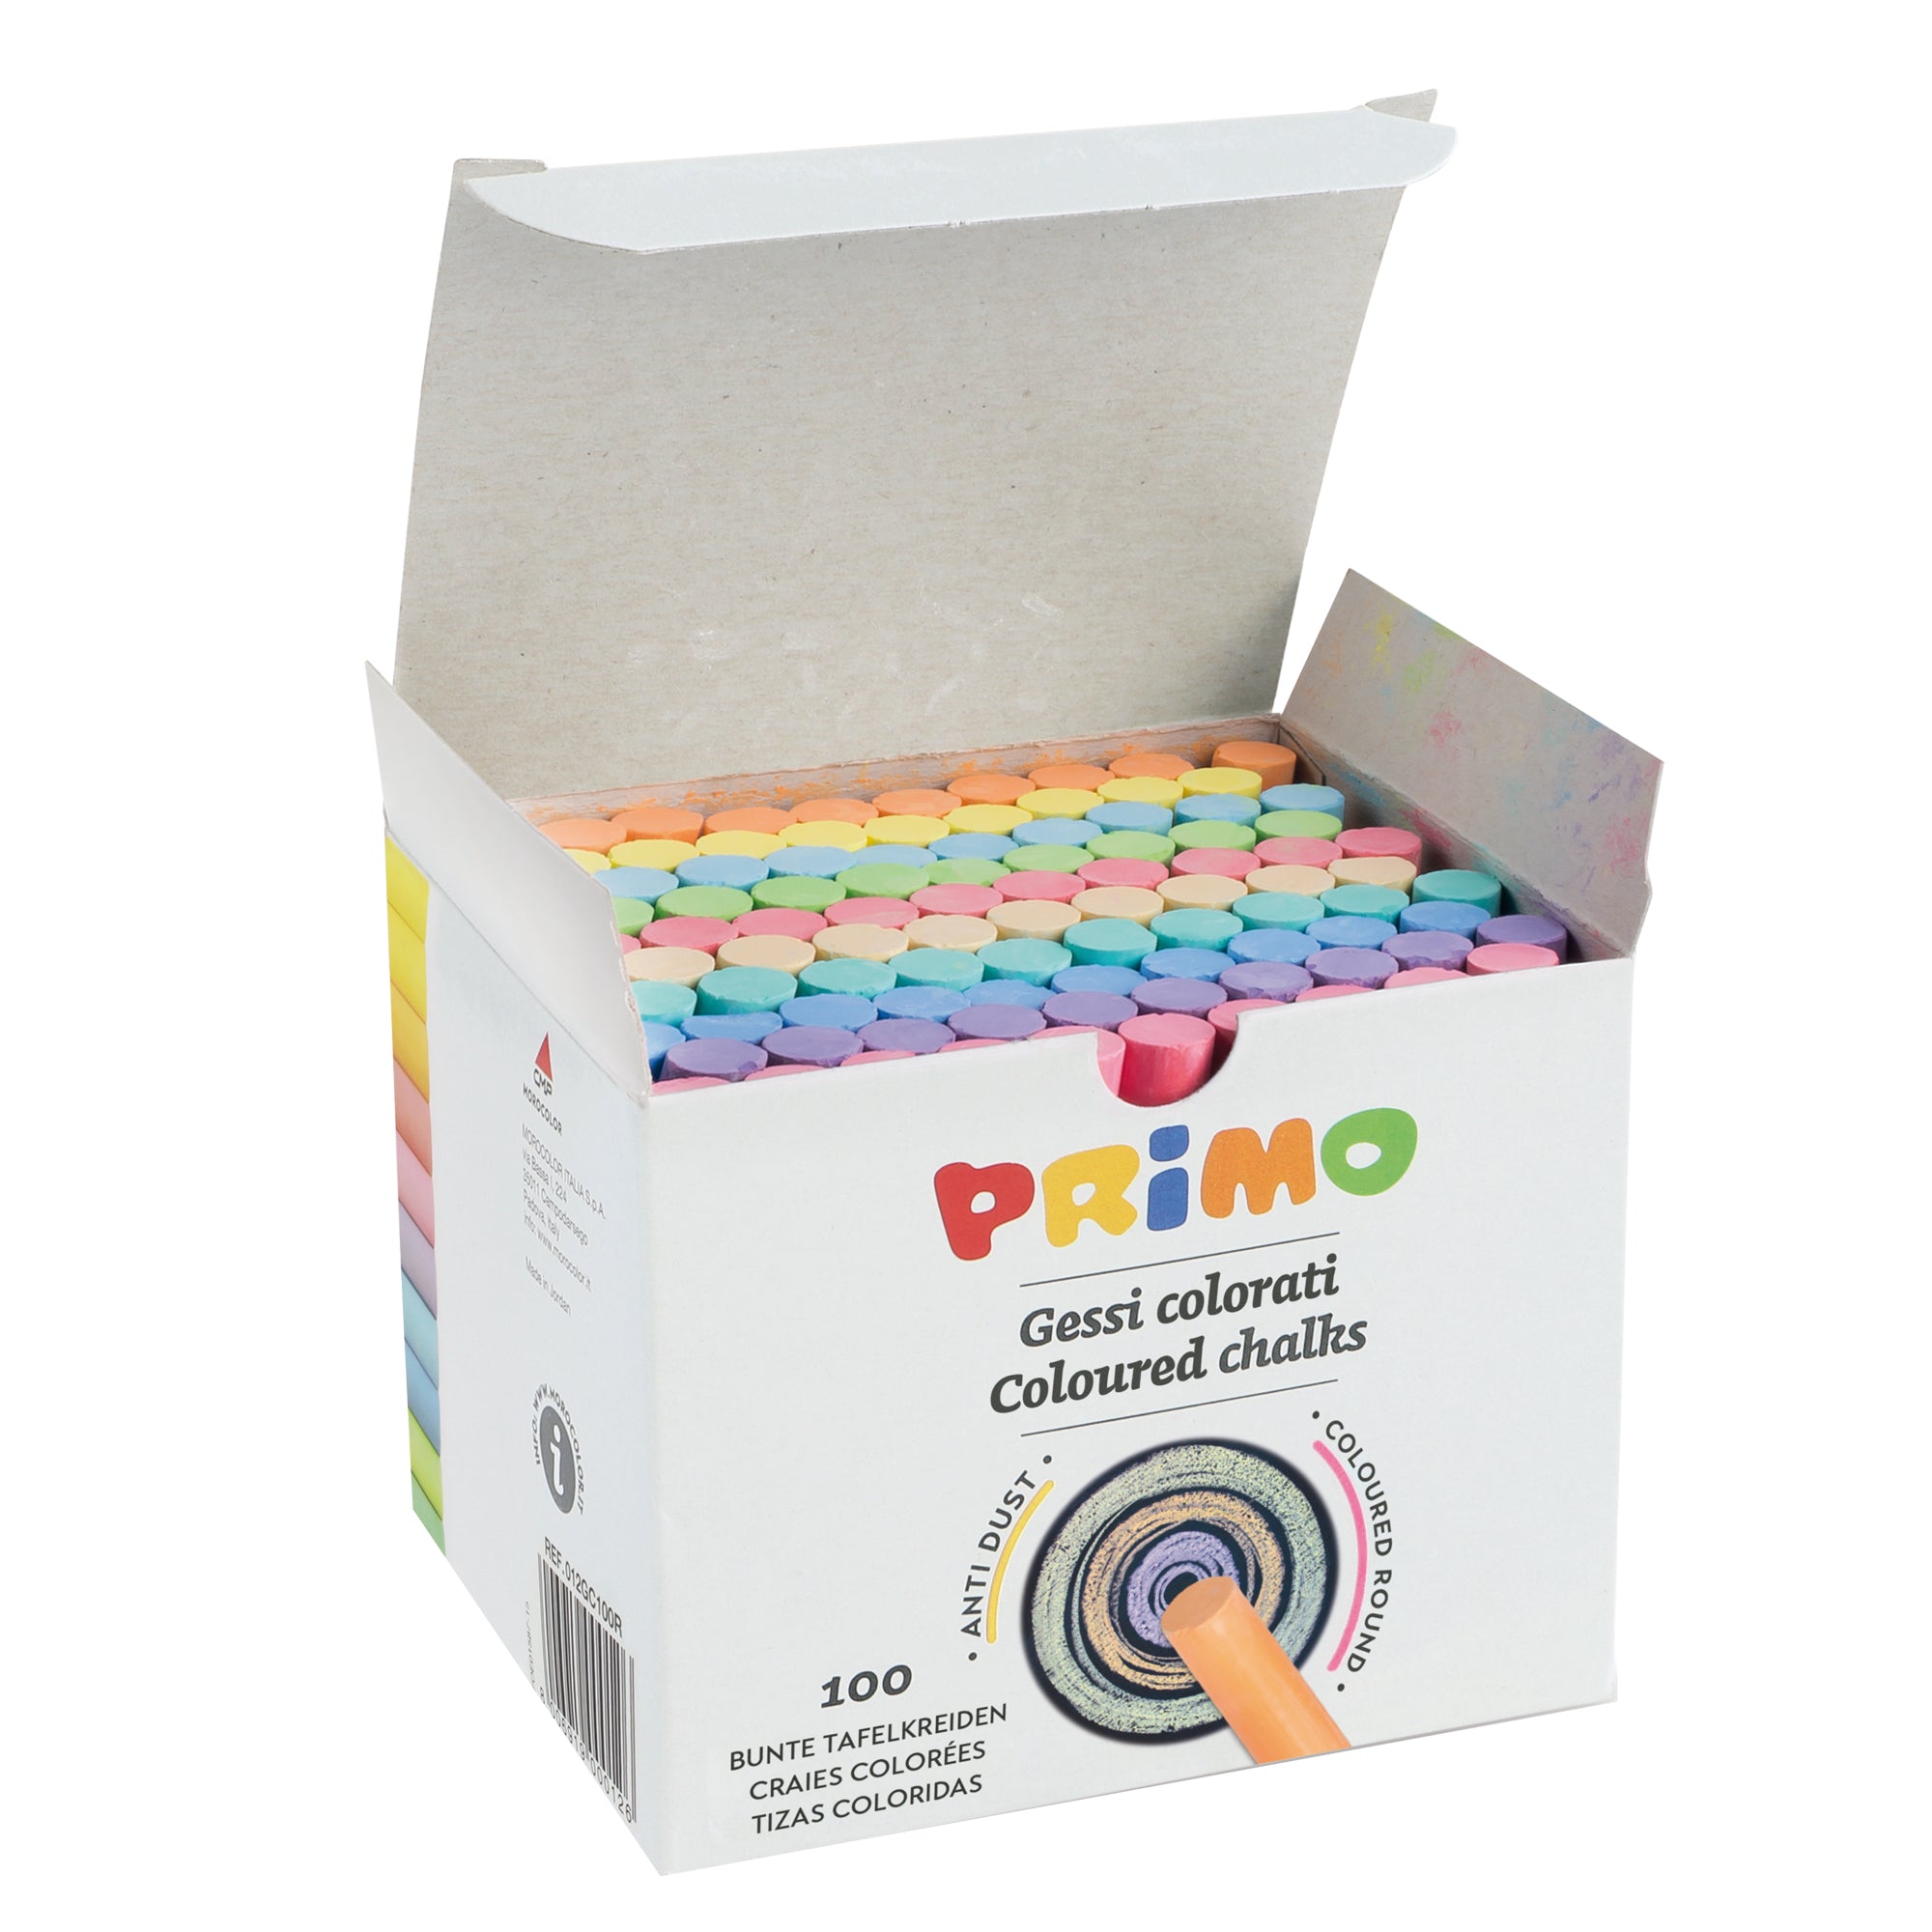 primo-morocolor-scatola-100-gessetti-tondi-colorati-primo